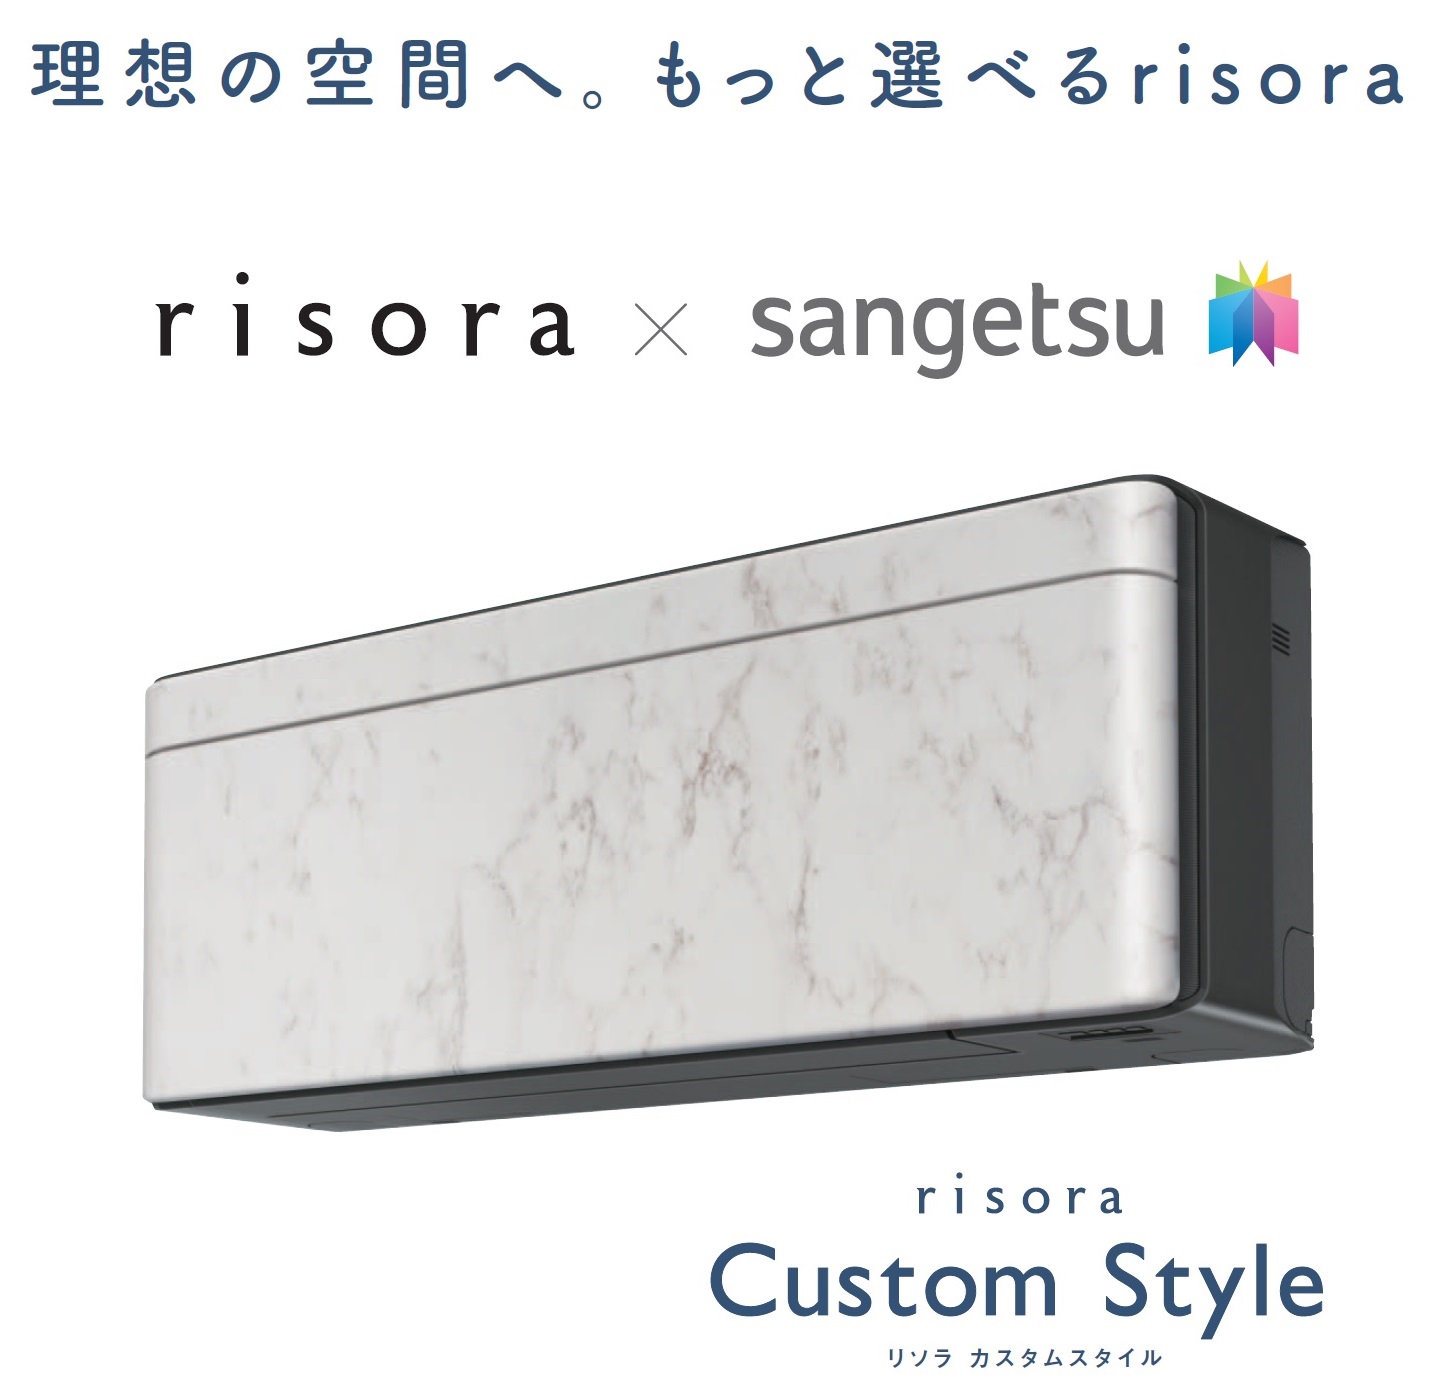 ダイキン工業とサンゲツが Risora Custom Style の新たなサービスメニューを共同企画 サンゲツ